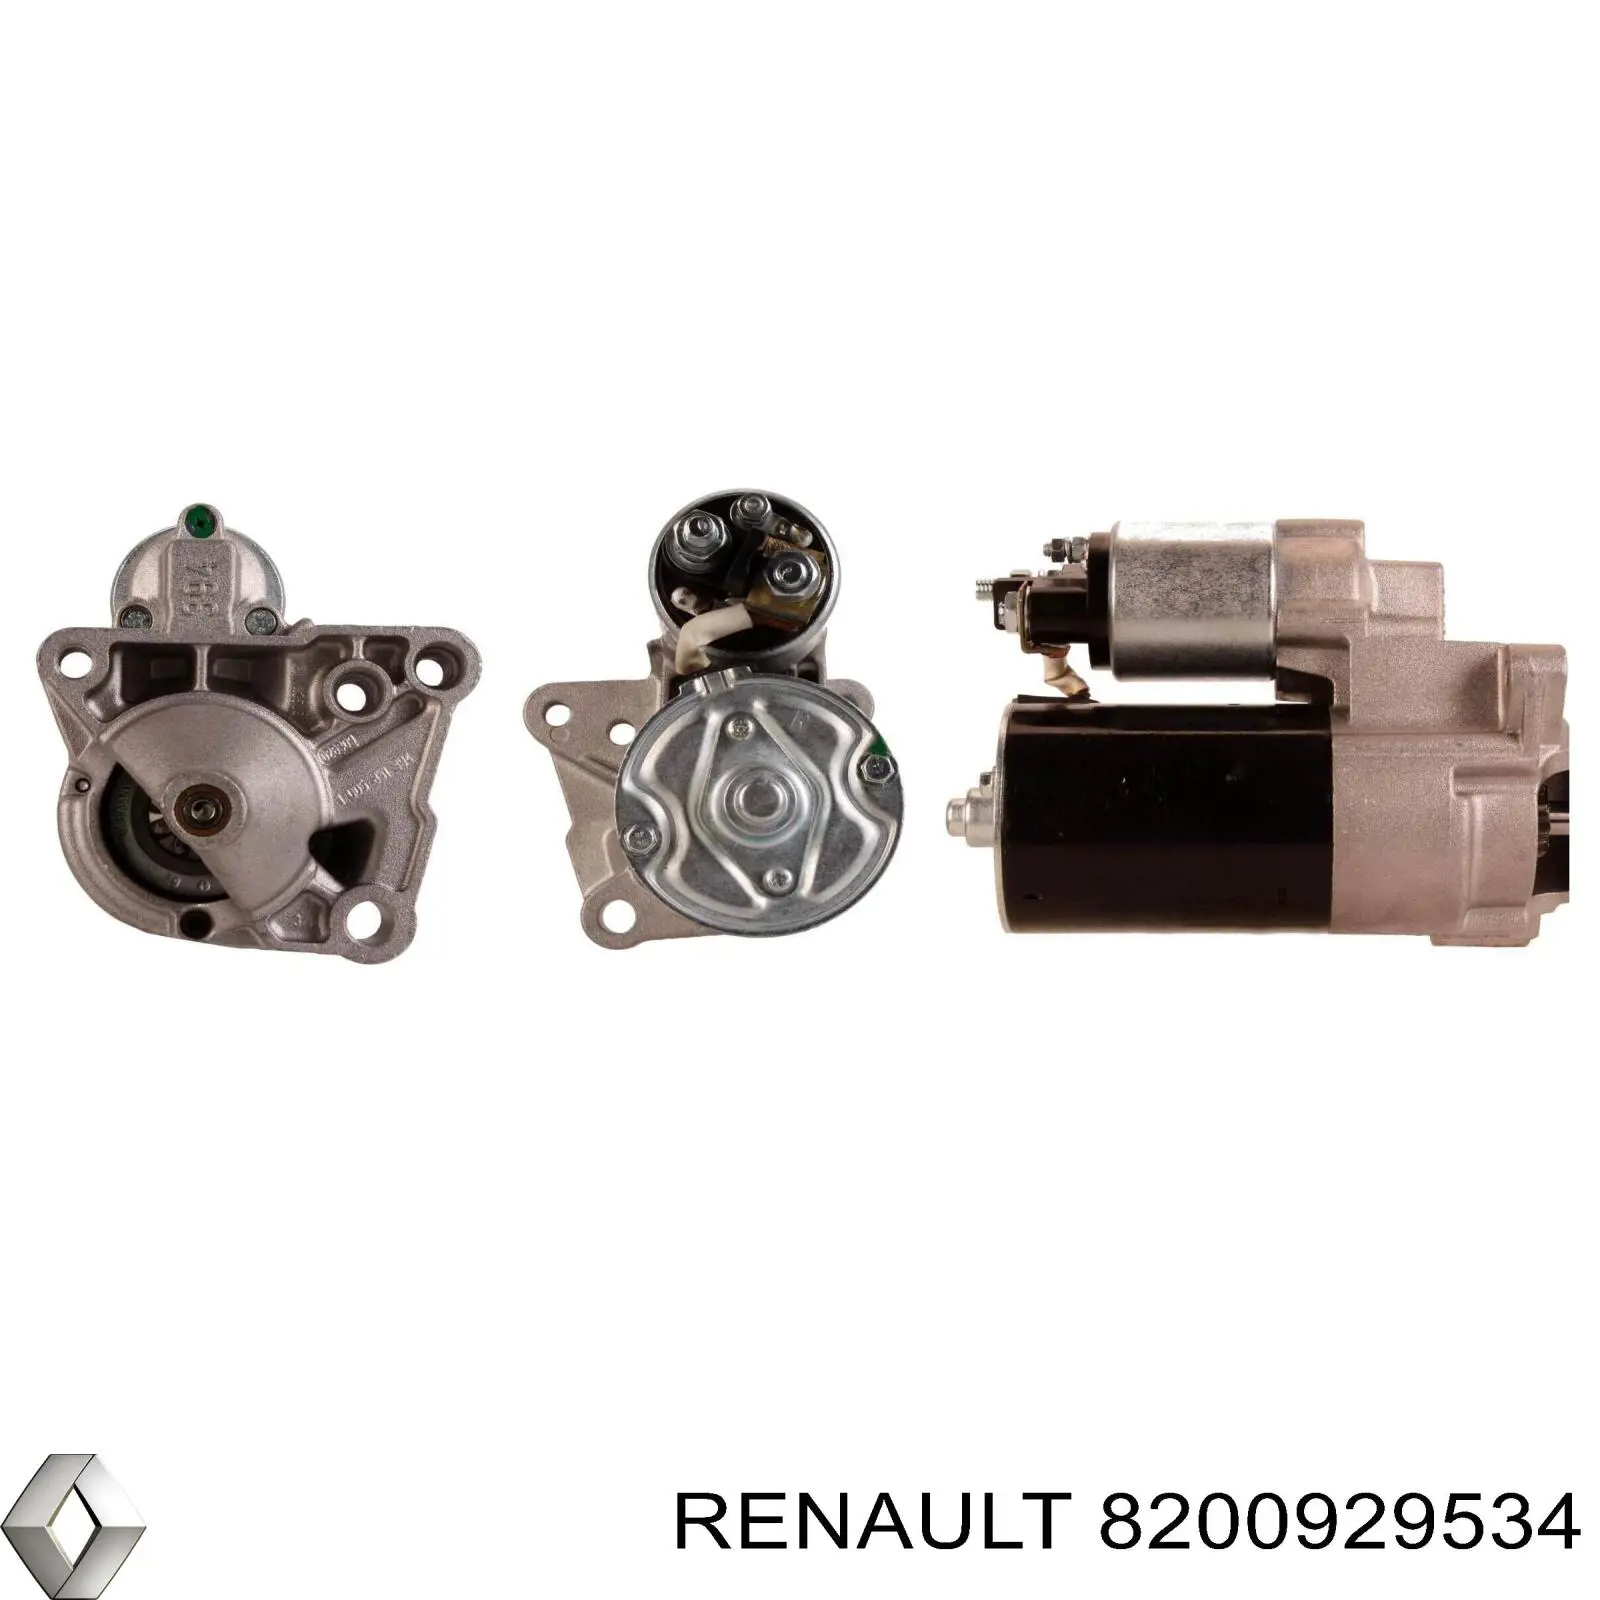 8200929534 Renault (RVI) motor de arranque